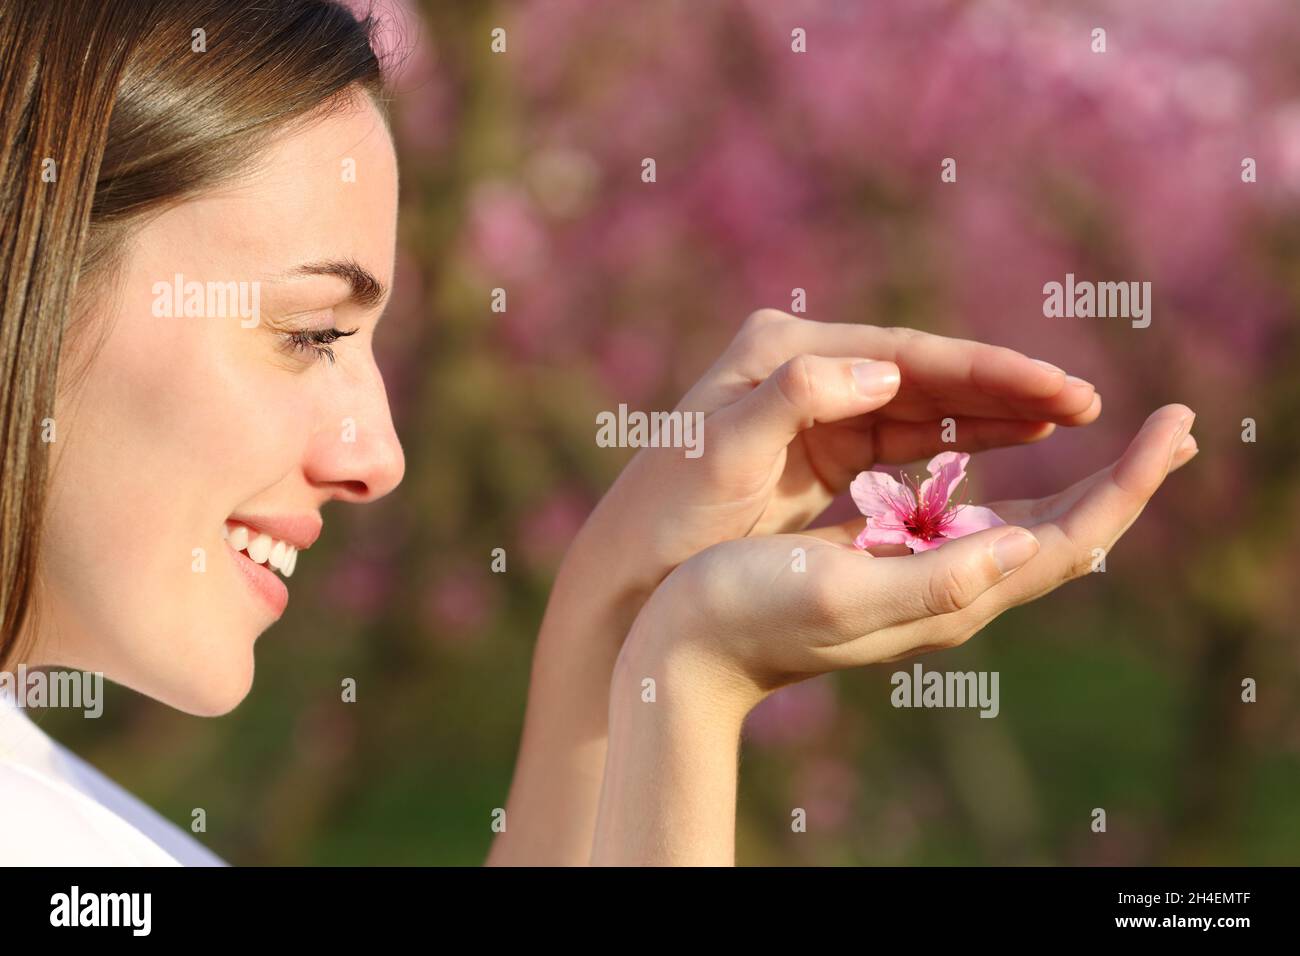 Profil d'une femme heureuse protégeant la fleur dans ses mains dans un champ Banque D'Images